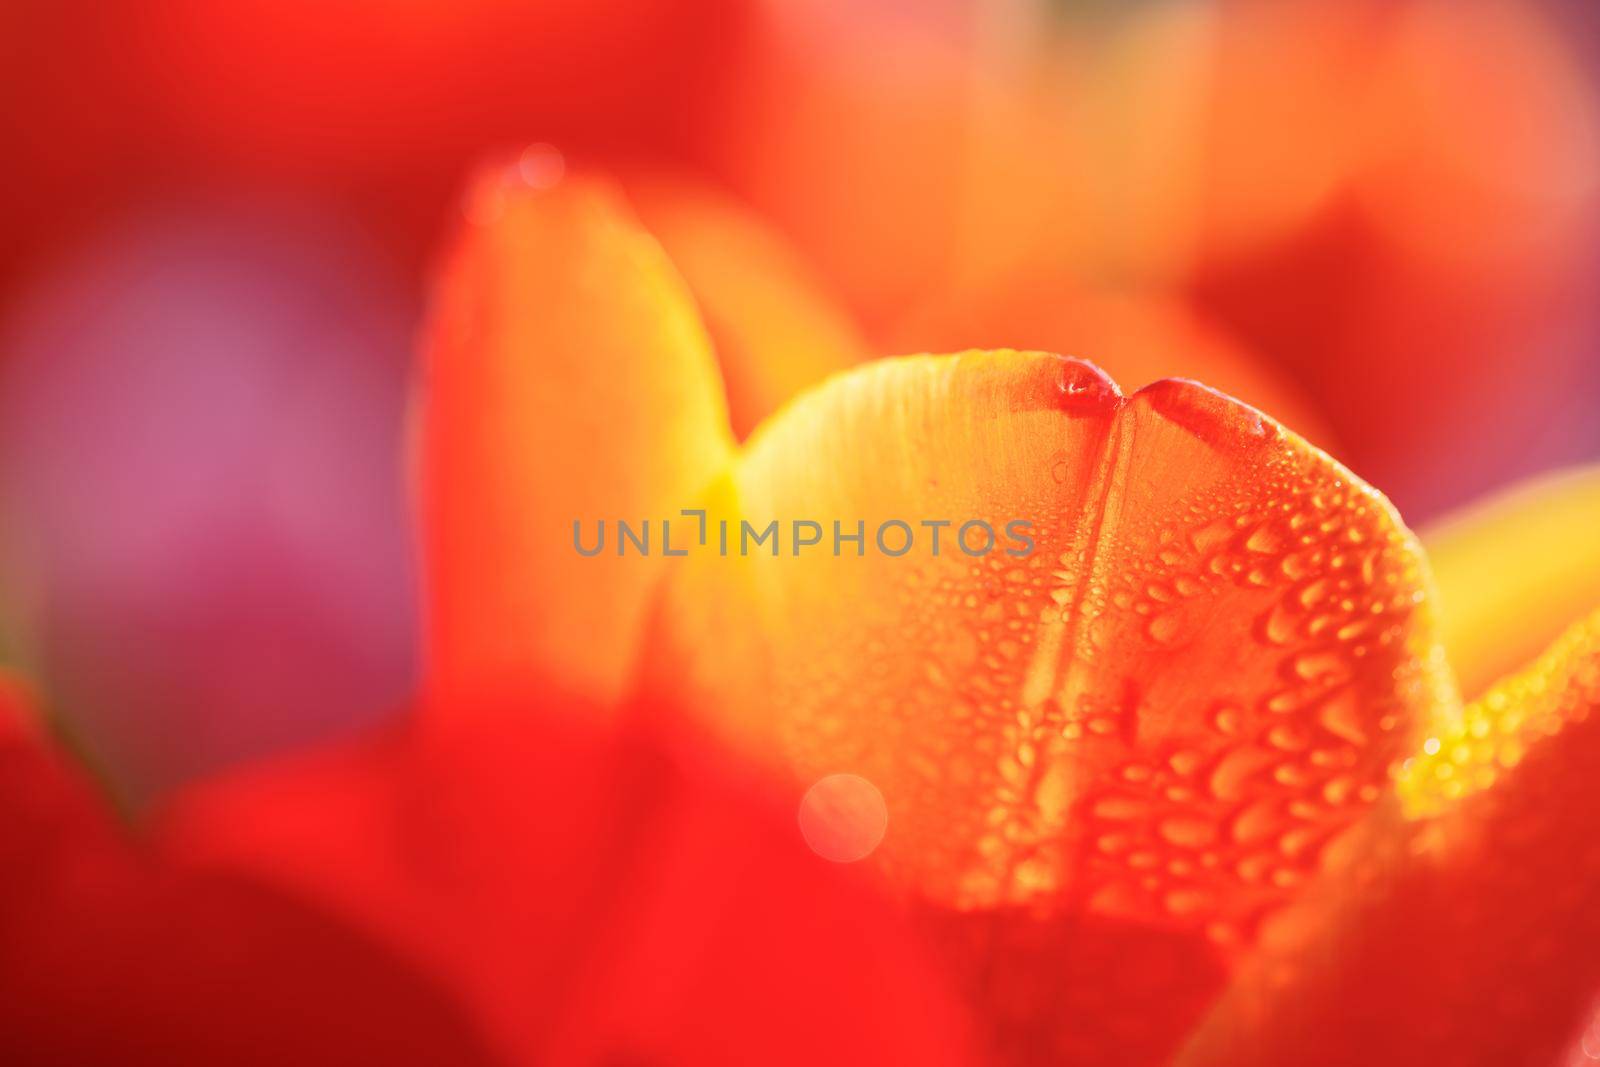 Orange Tulip flower in close up with raindrop